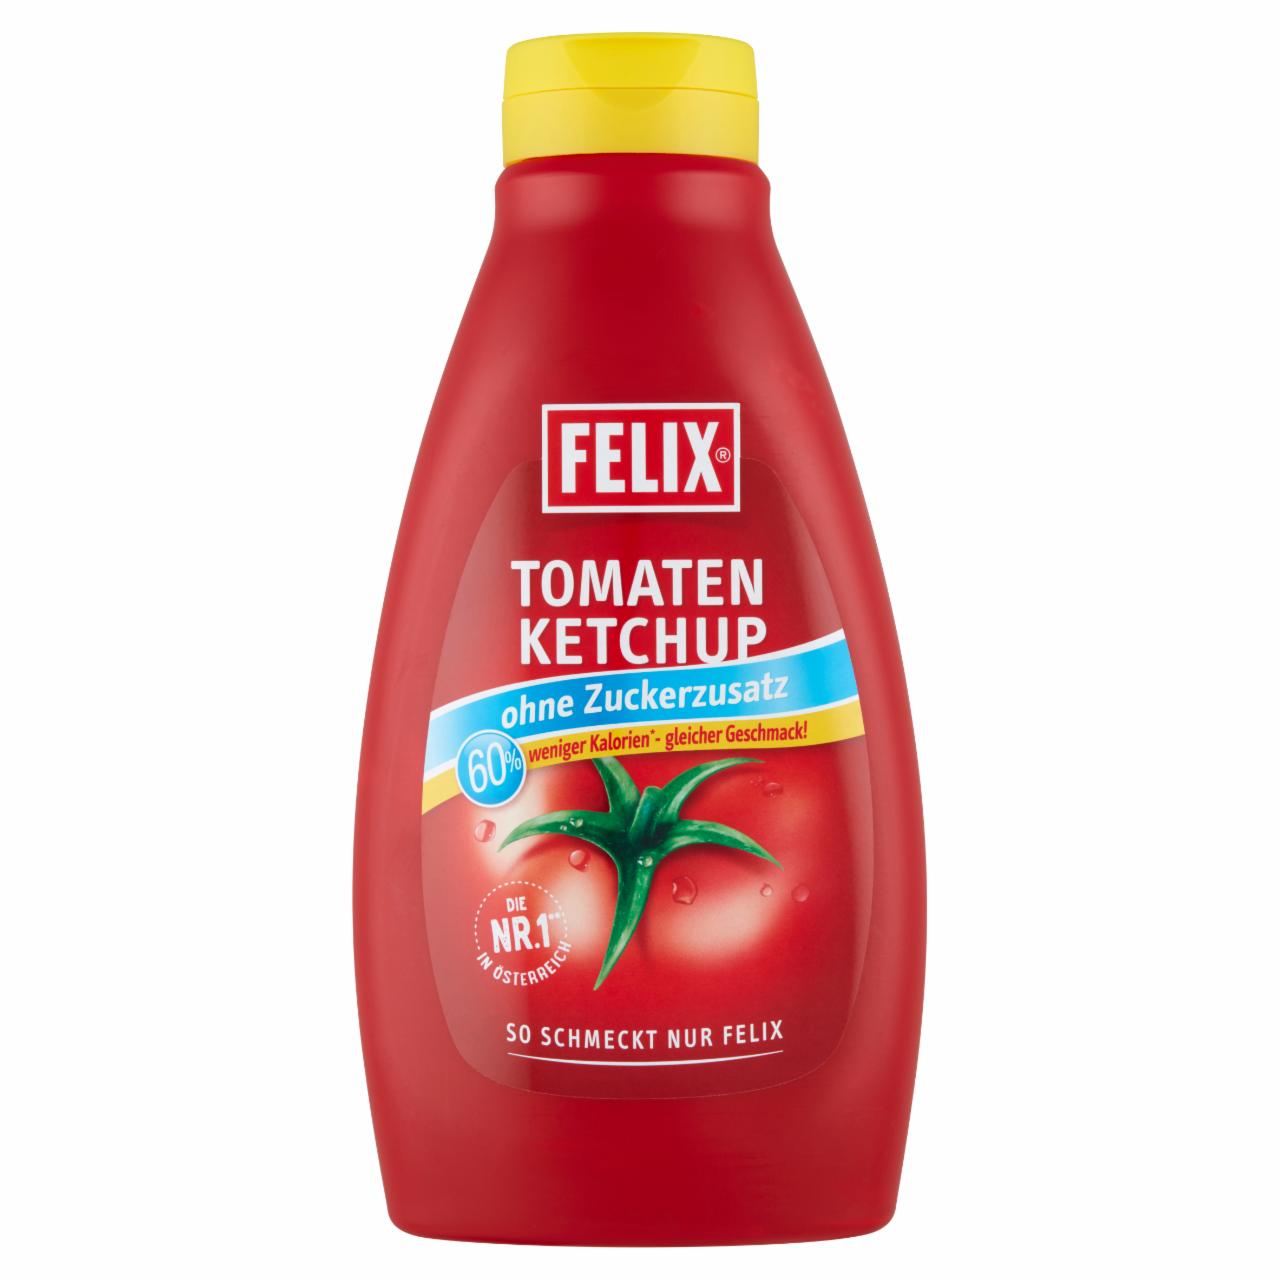 Képek - Felix ketchup édesítőszerrel 1,4 kg